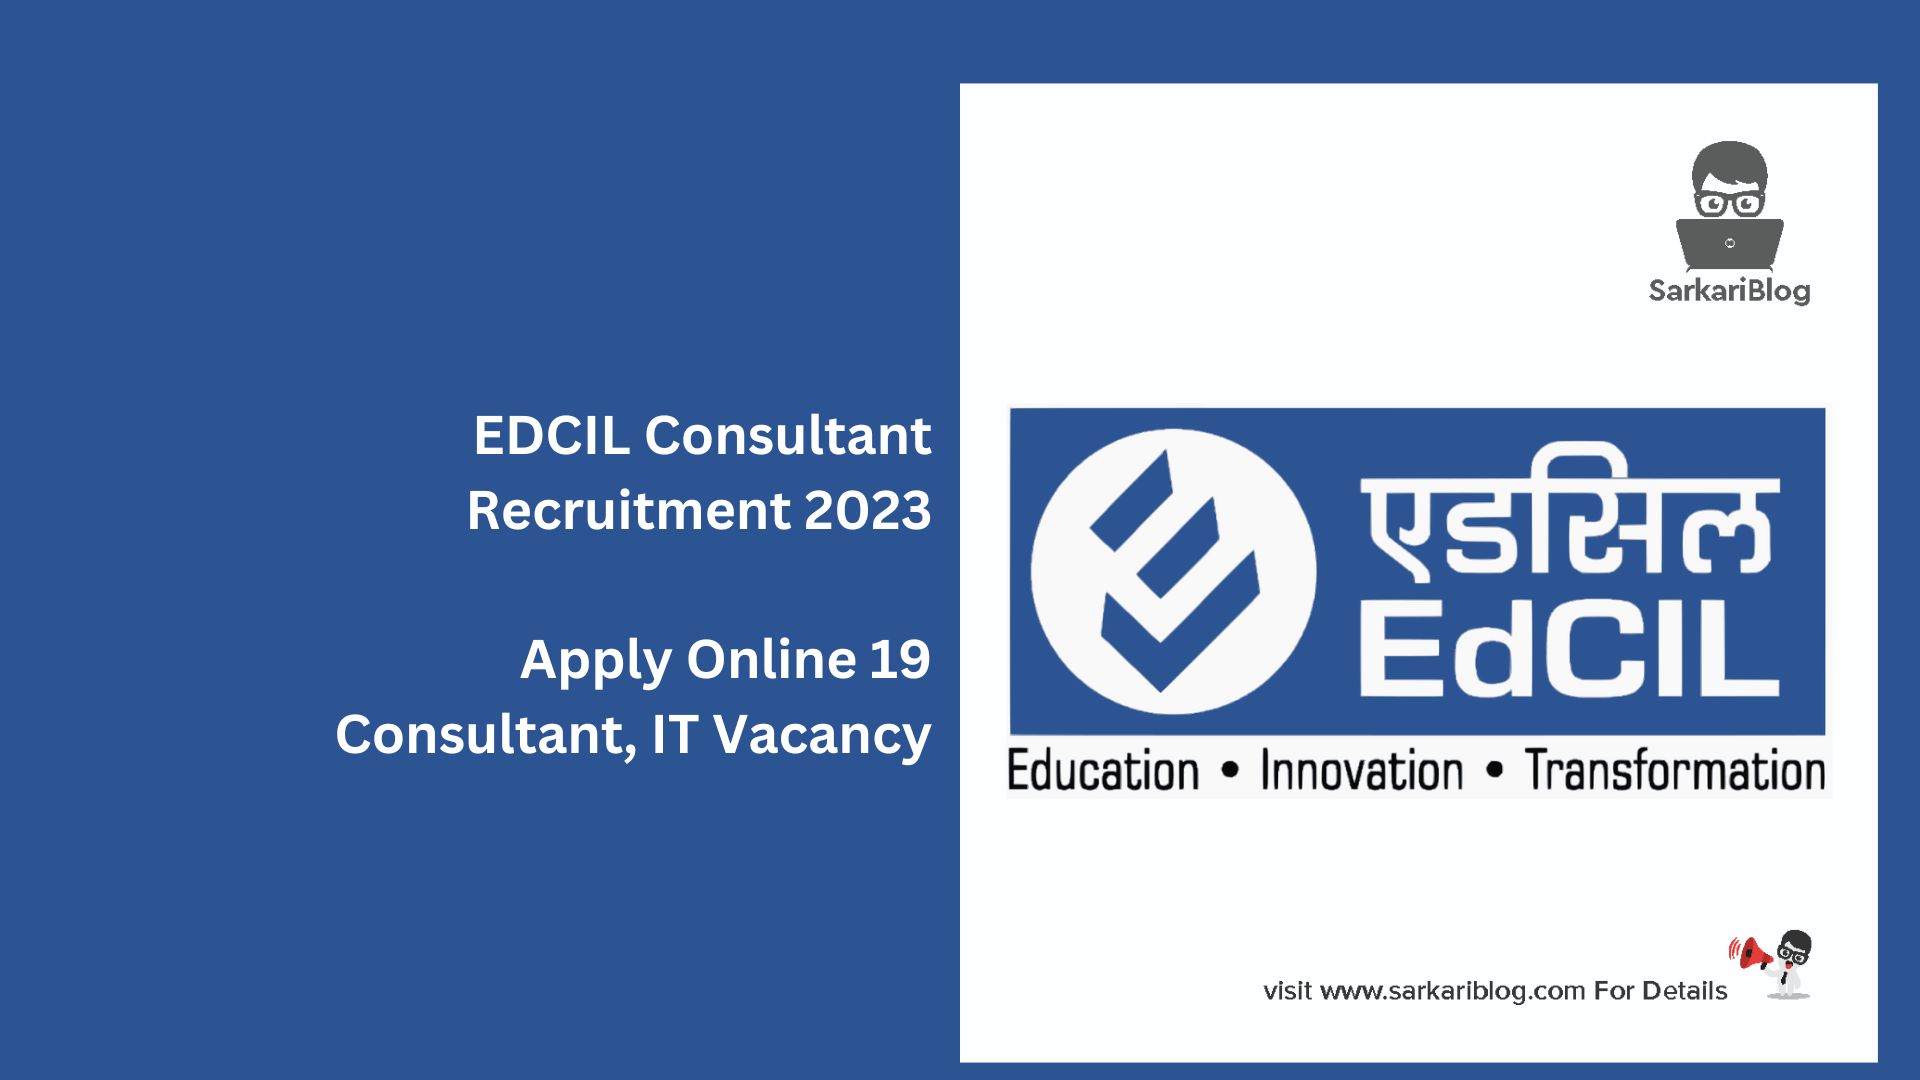 EDCIL Consultant Recruitment 2023